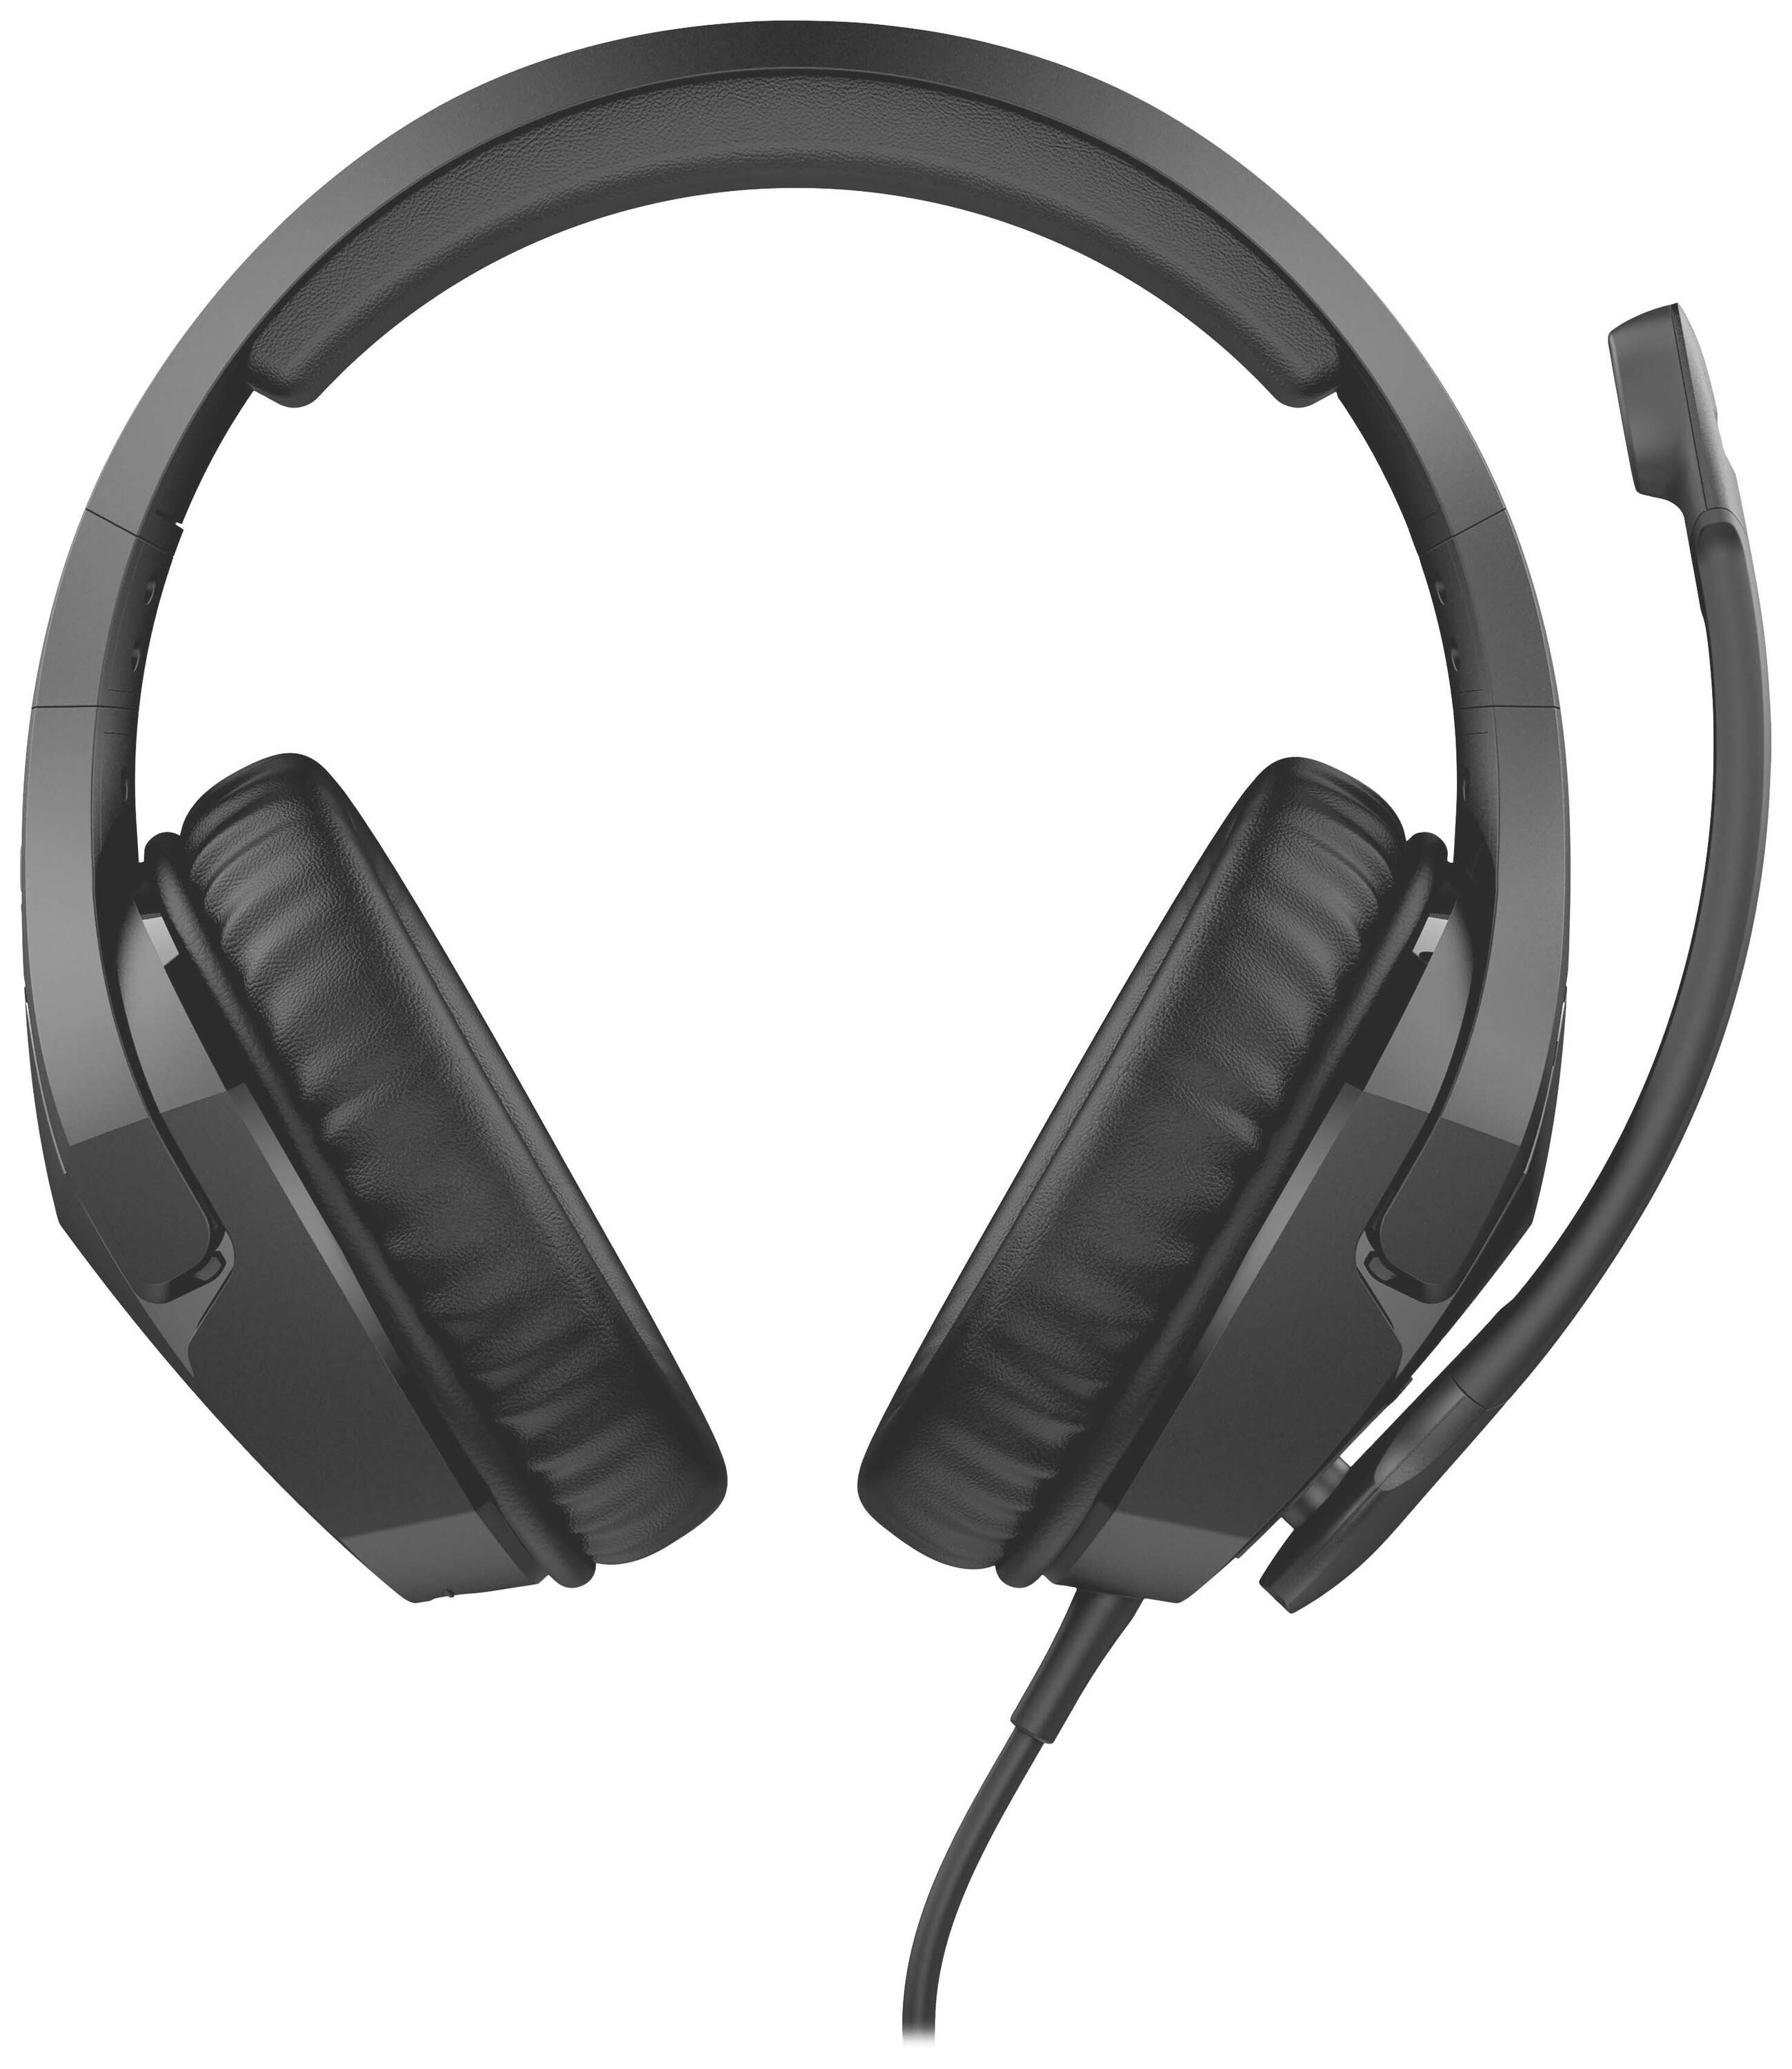 KINGSTON HyperX Cloud Stinger S 7.1 for PC Gaming Over Ear Headset kabelgebunden Stereo Schwarz Laut